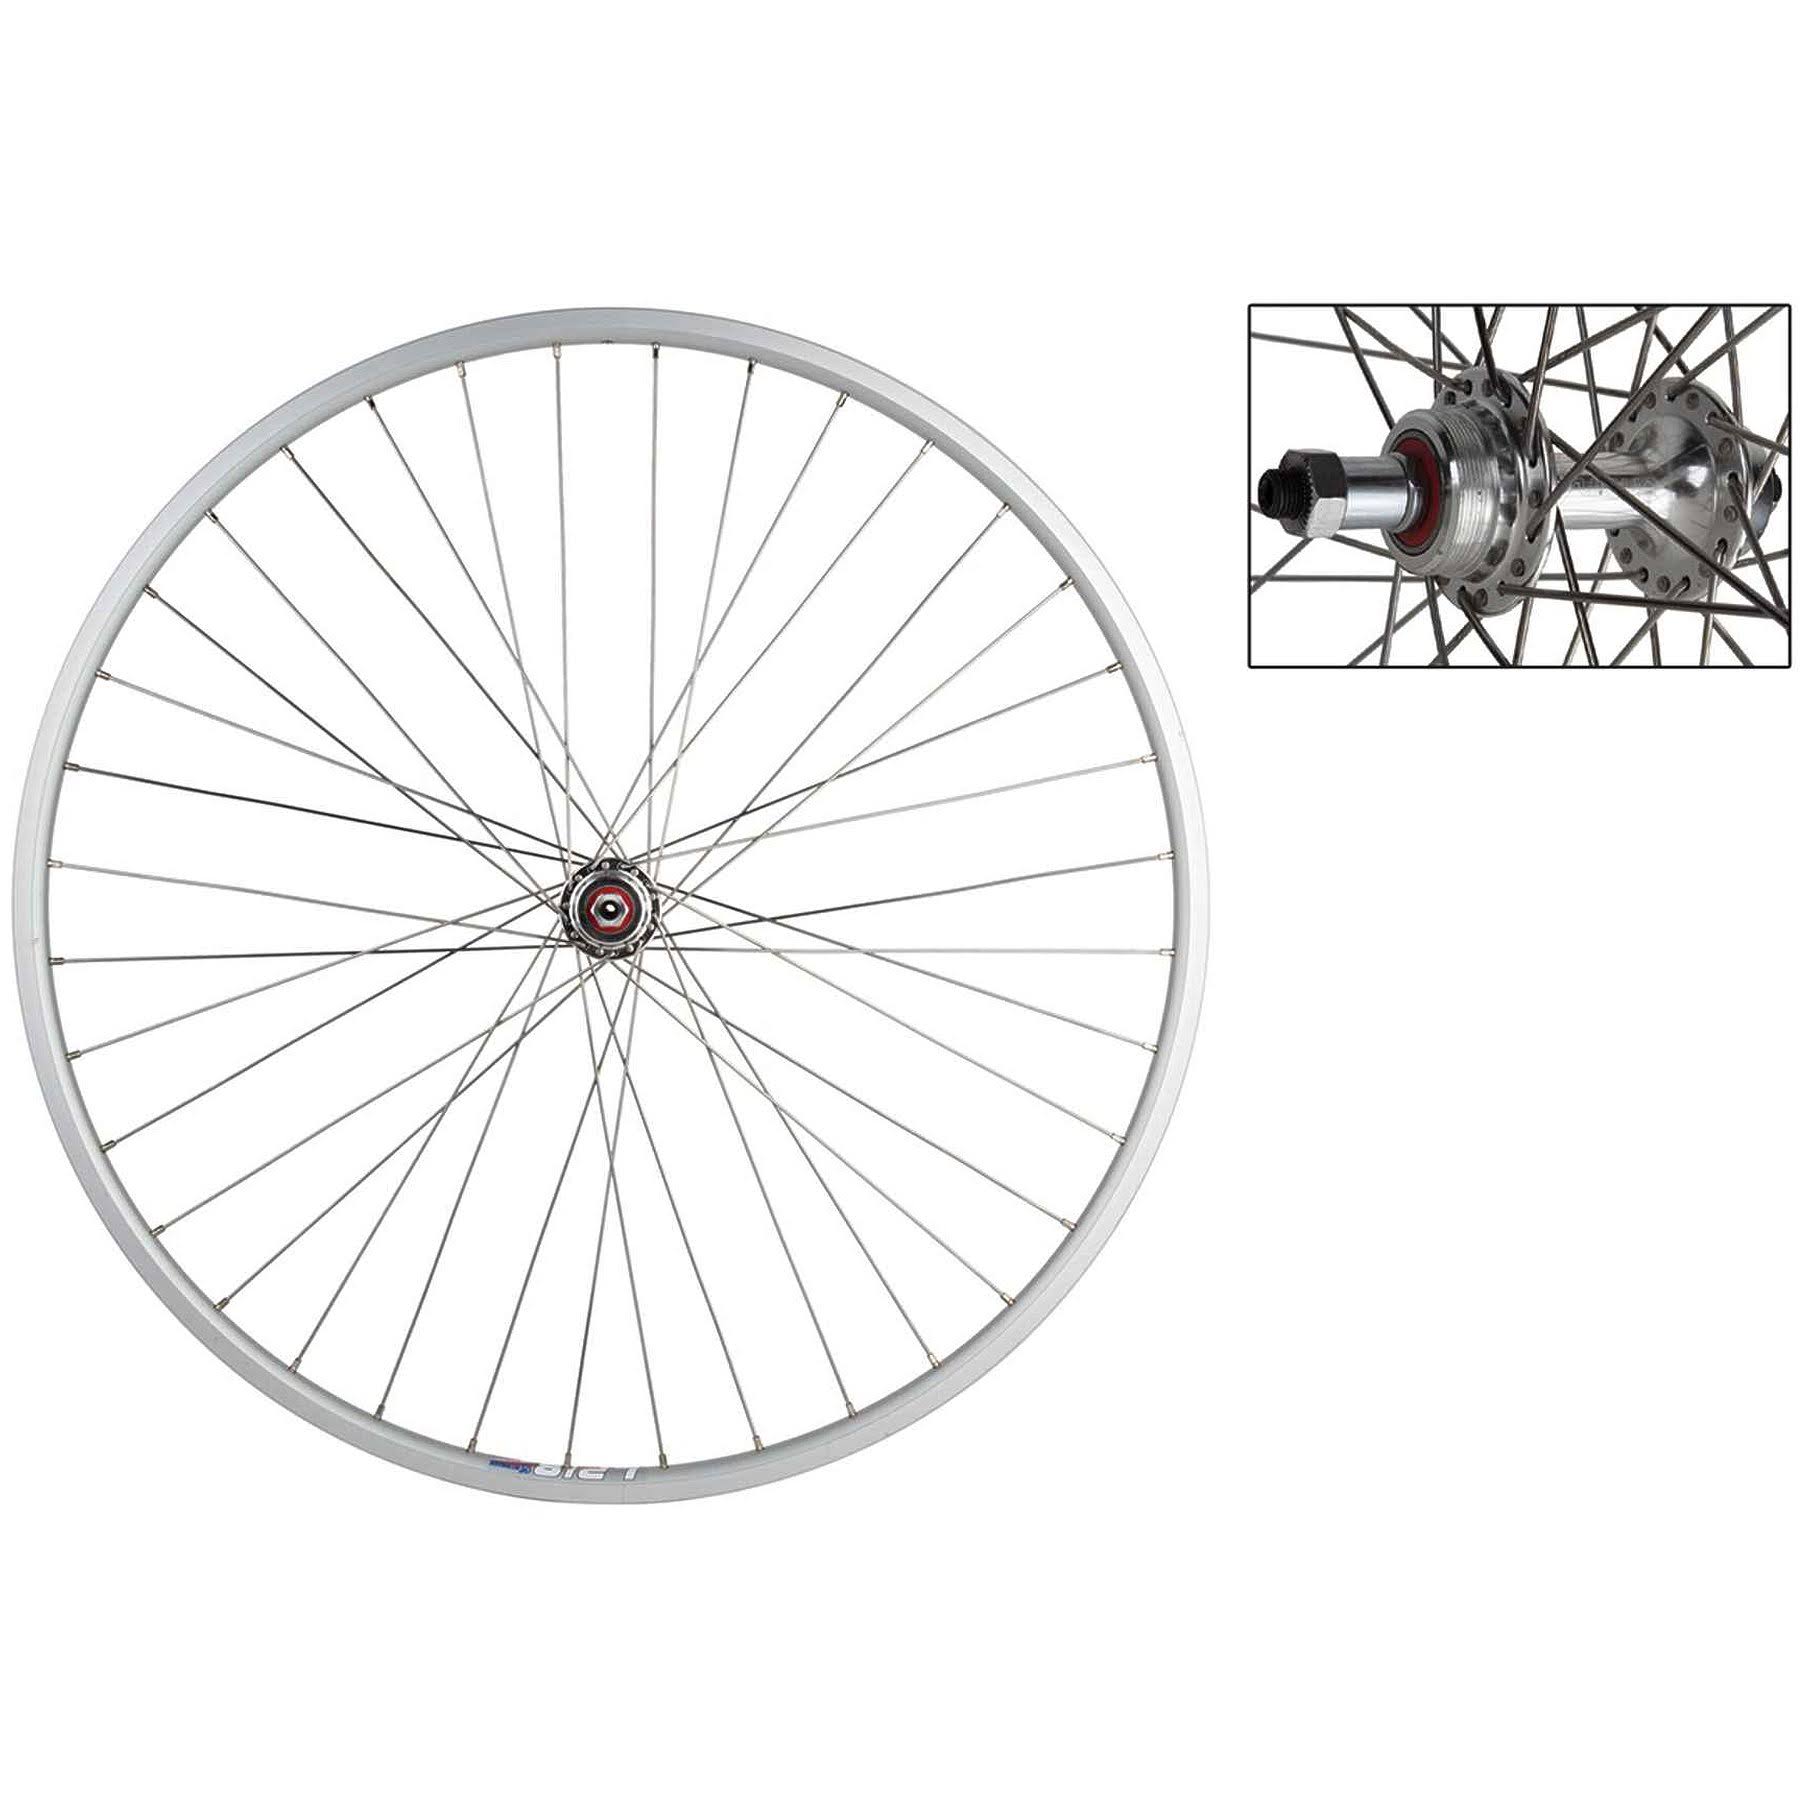 Wheel Master Weinmann LP18 Rear Wheel - 27 x 1, 36H, 5/6/7-Speed, QR, Silver